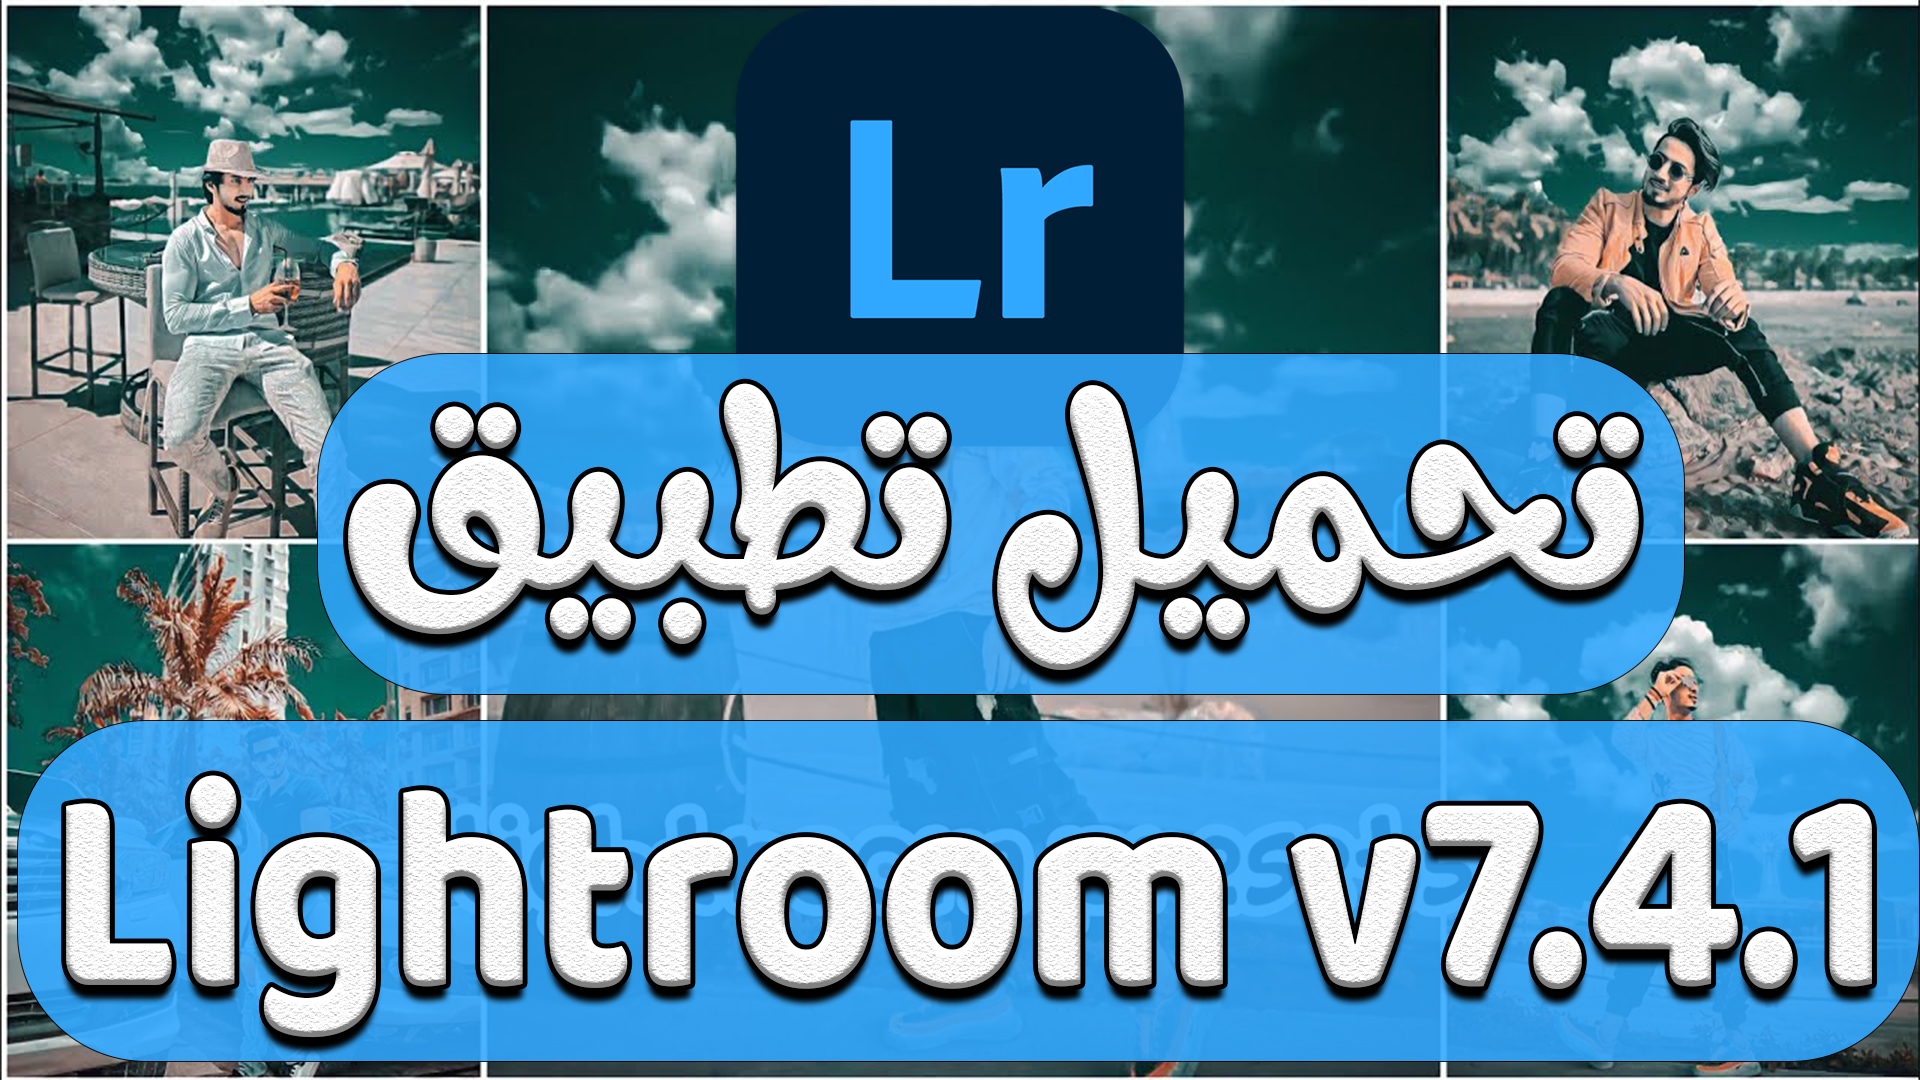 تحميل عملاق التعديل علي الصور Lightroom Photo & Video Editor v7.4.1 بمميزات خرافية وفلاتر وبريسيت احترافي